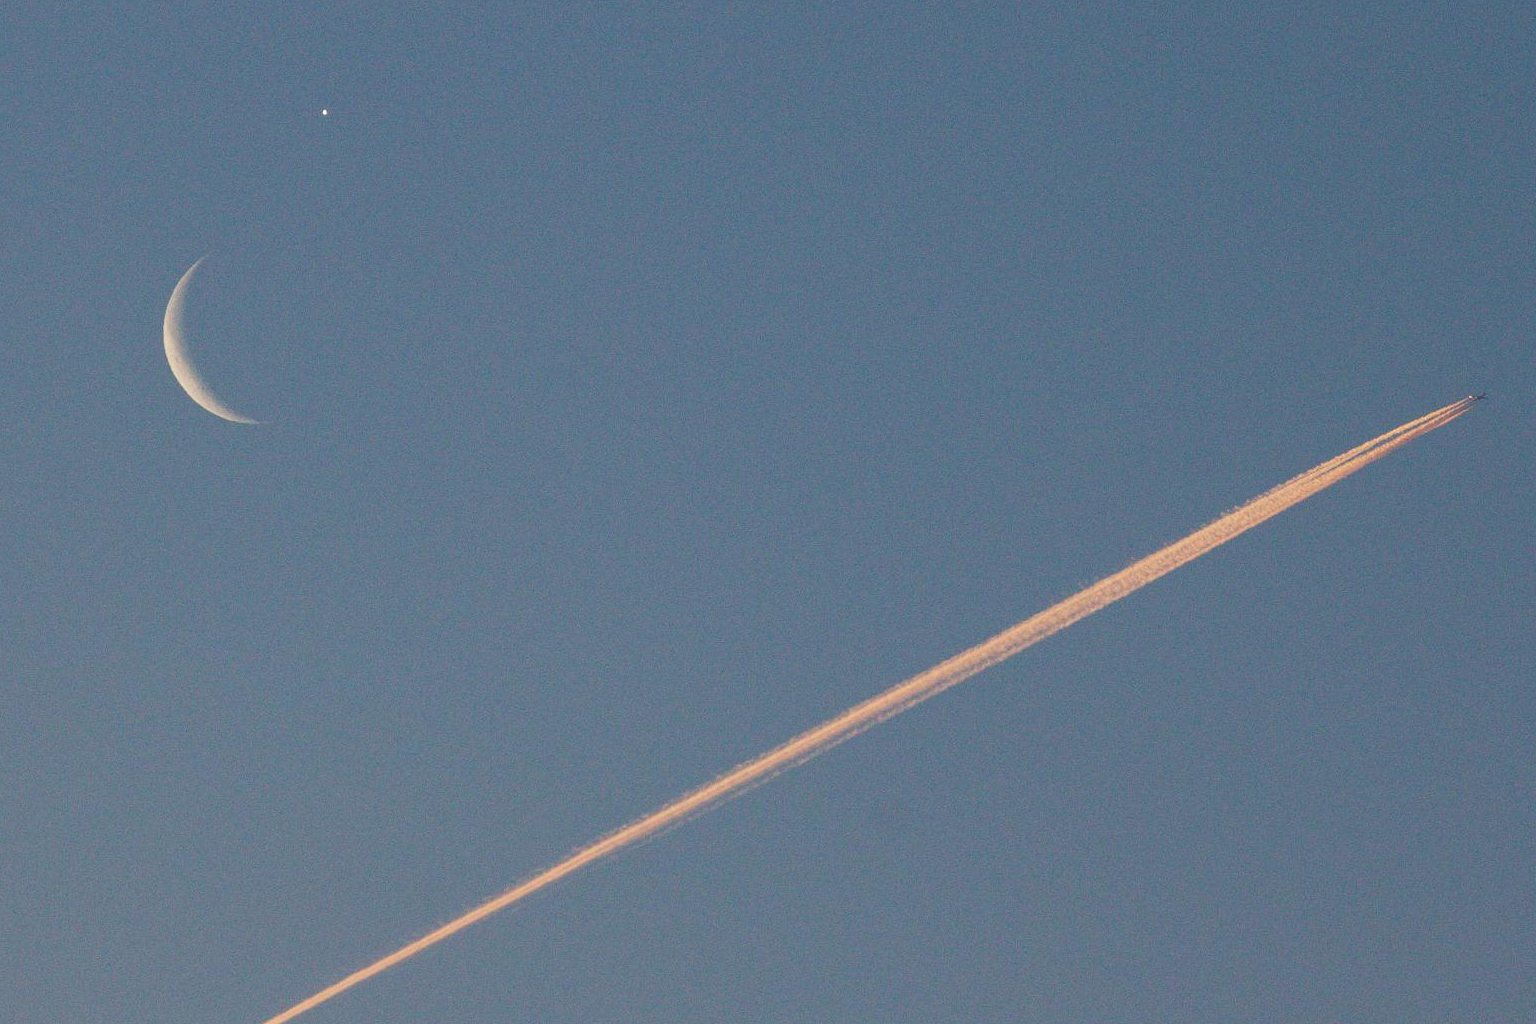 Snímek setkání Mesíce a Venuše s letadlem